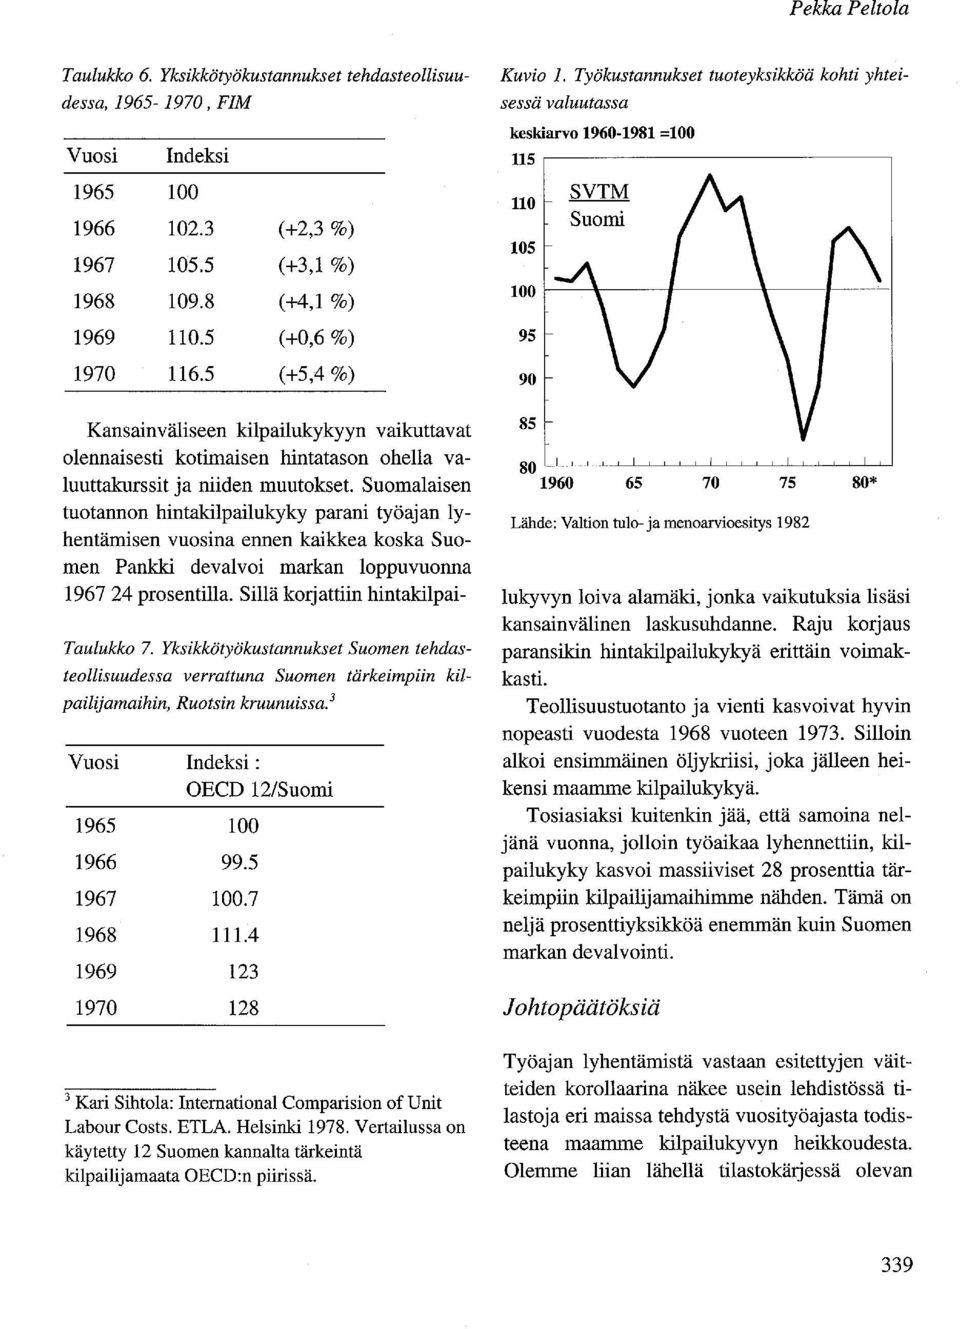 Suomalaisen tuotannon hintakilpailukyky parani työajan lyhentämisen vuosina ennen kaikkea koska Suomen Pankki devalvoi markan loppu vuonna 196724 prosentilla. Sillä korjattiin hintakilpai- Taulukko 7.